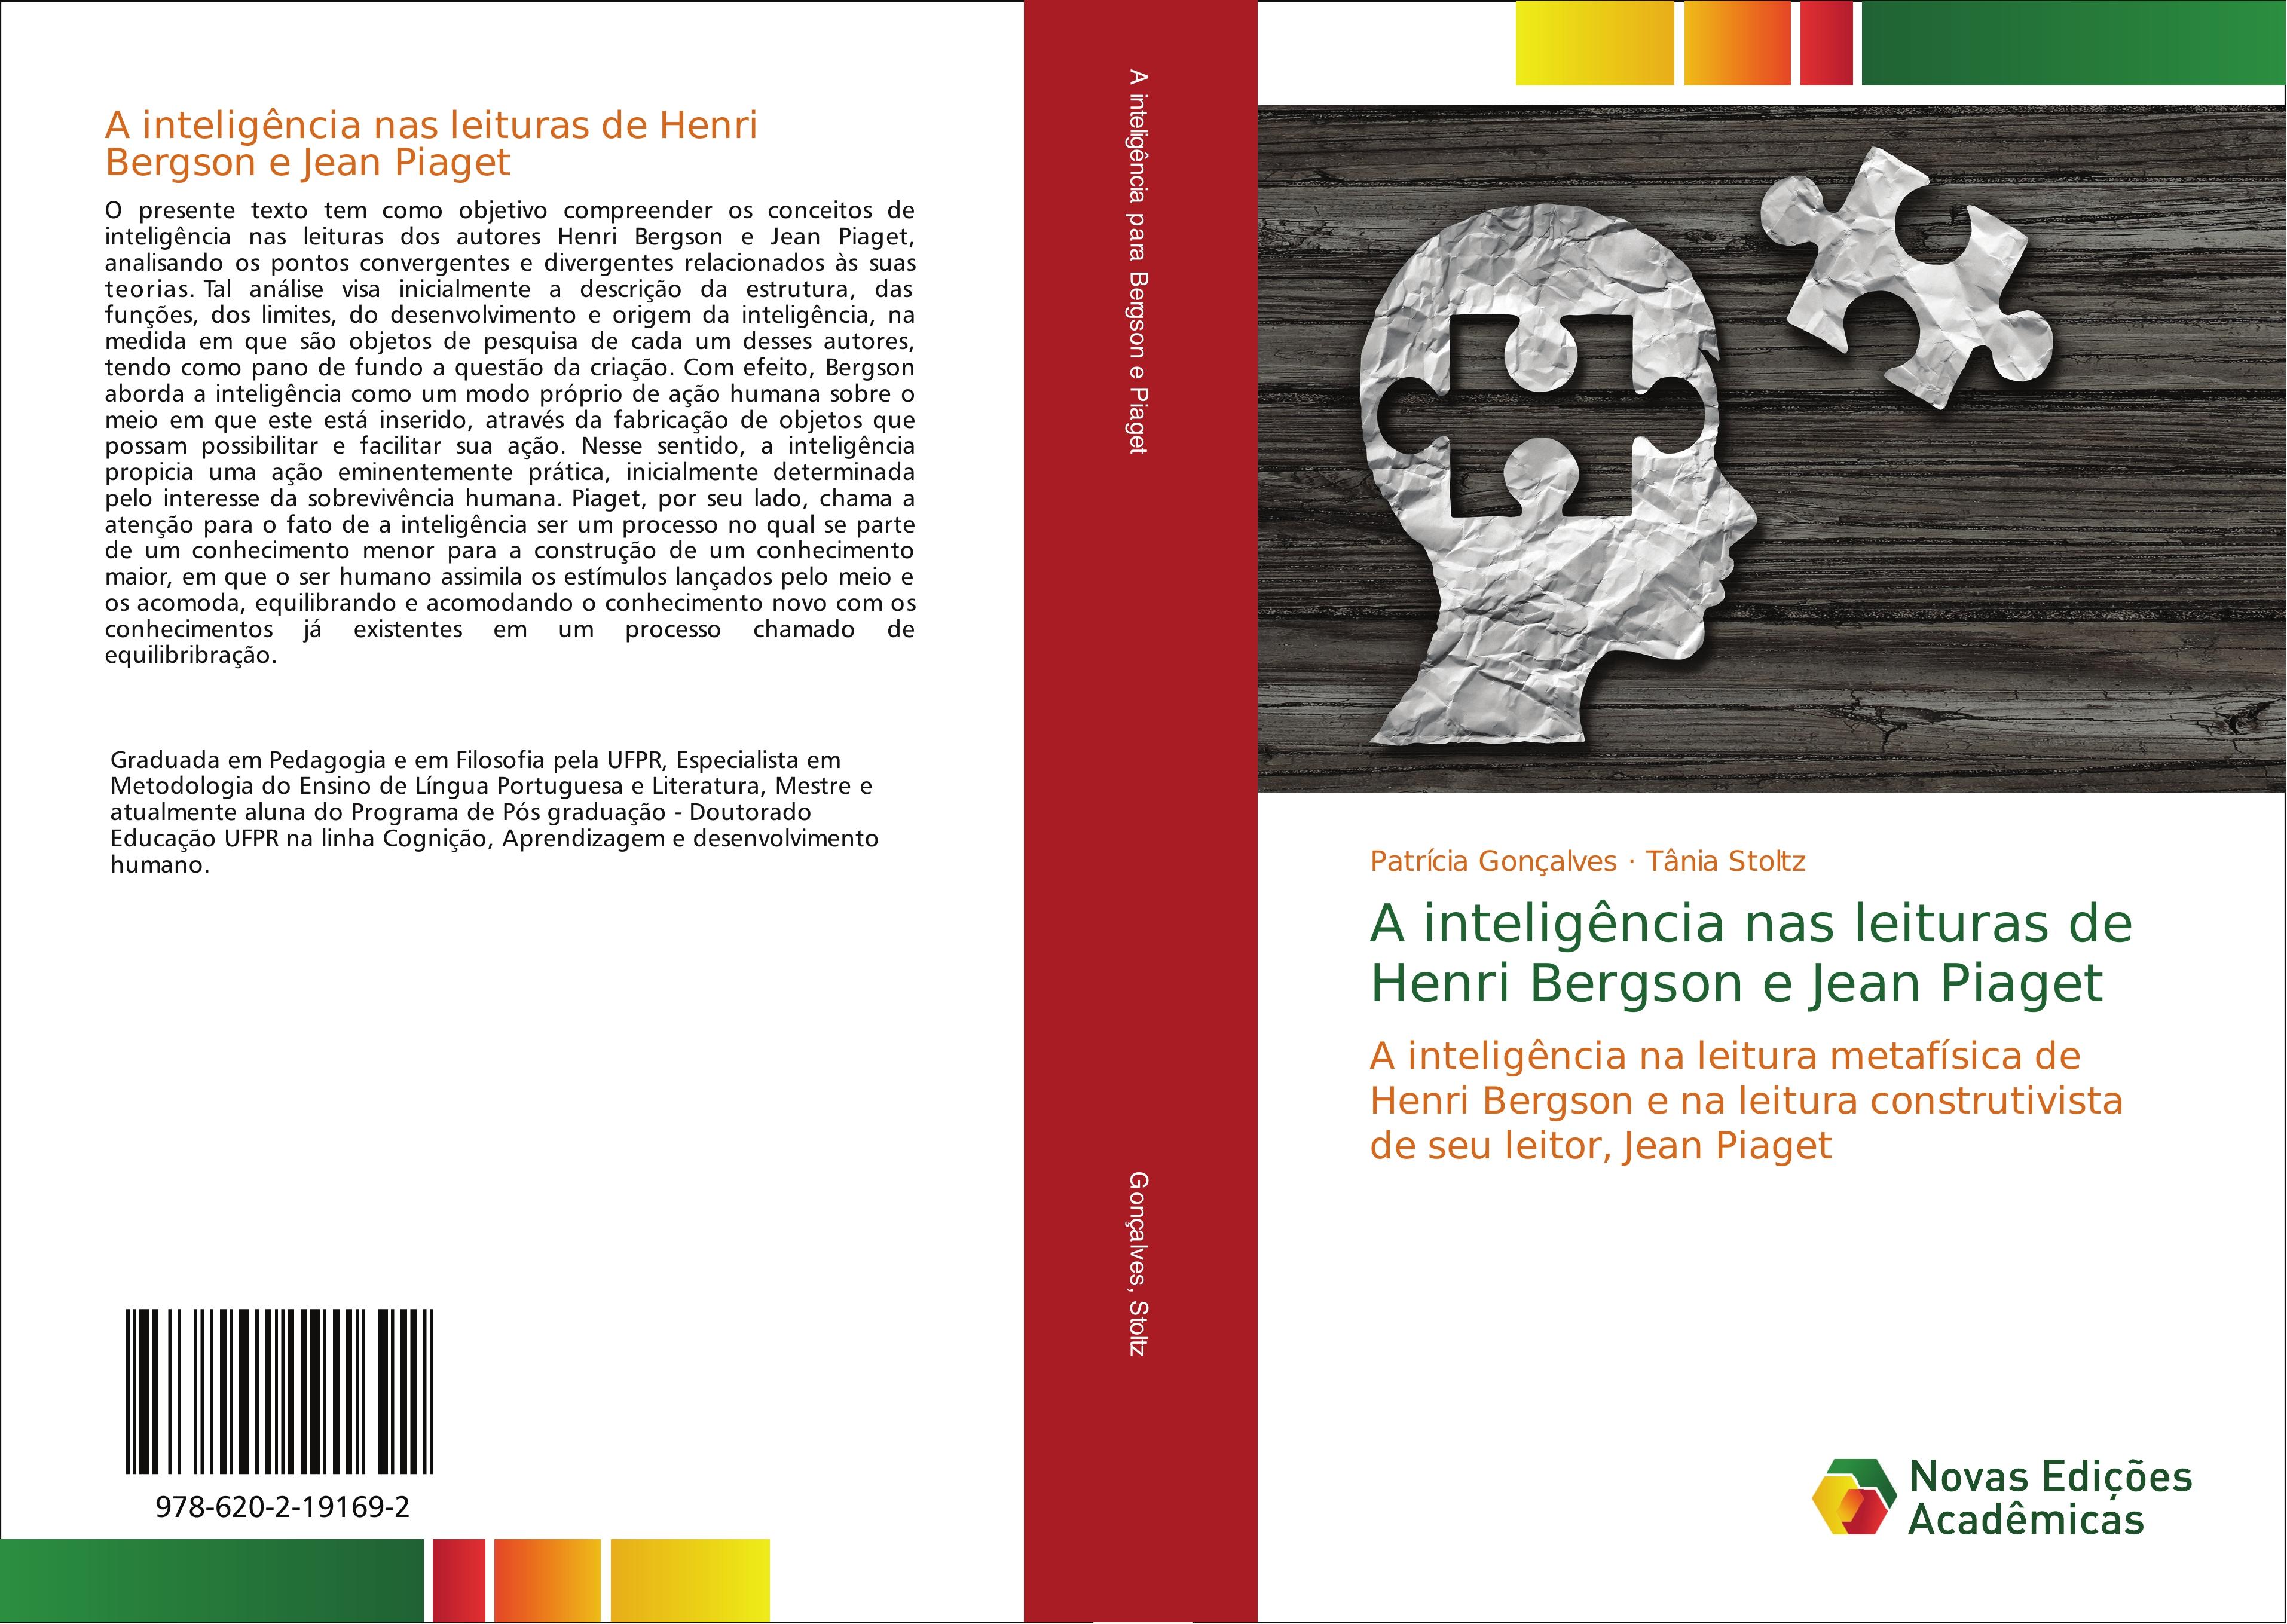 A inteligência nas leituras de Henri Bergson e Jean Piaget - Patrícia Gonçalves Tania Stoltz